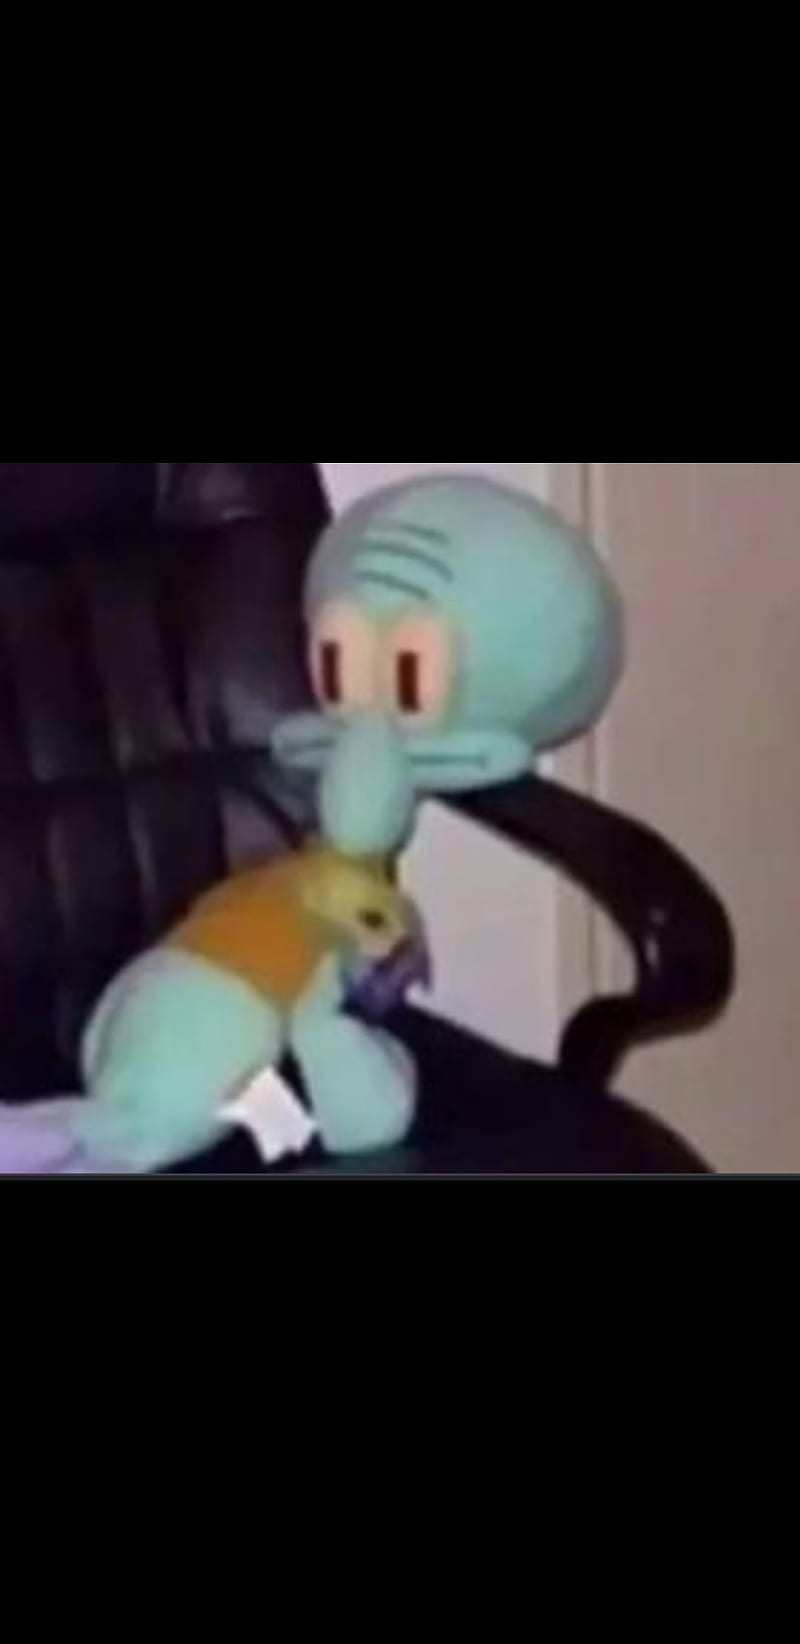 Squidward on a chair, memes, HD phone wallpaper